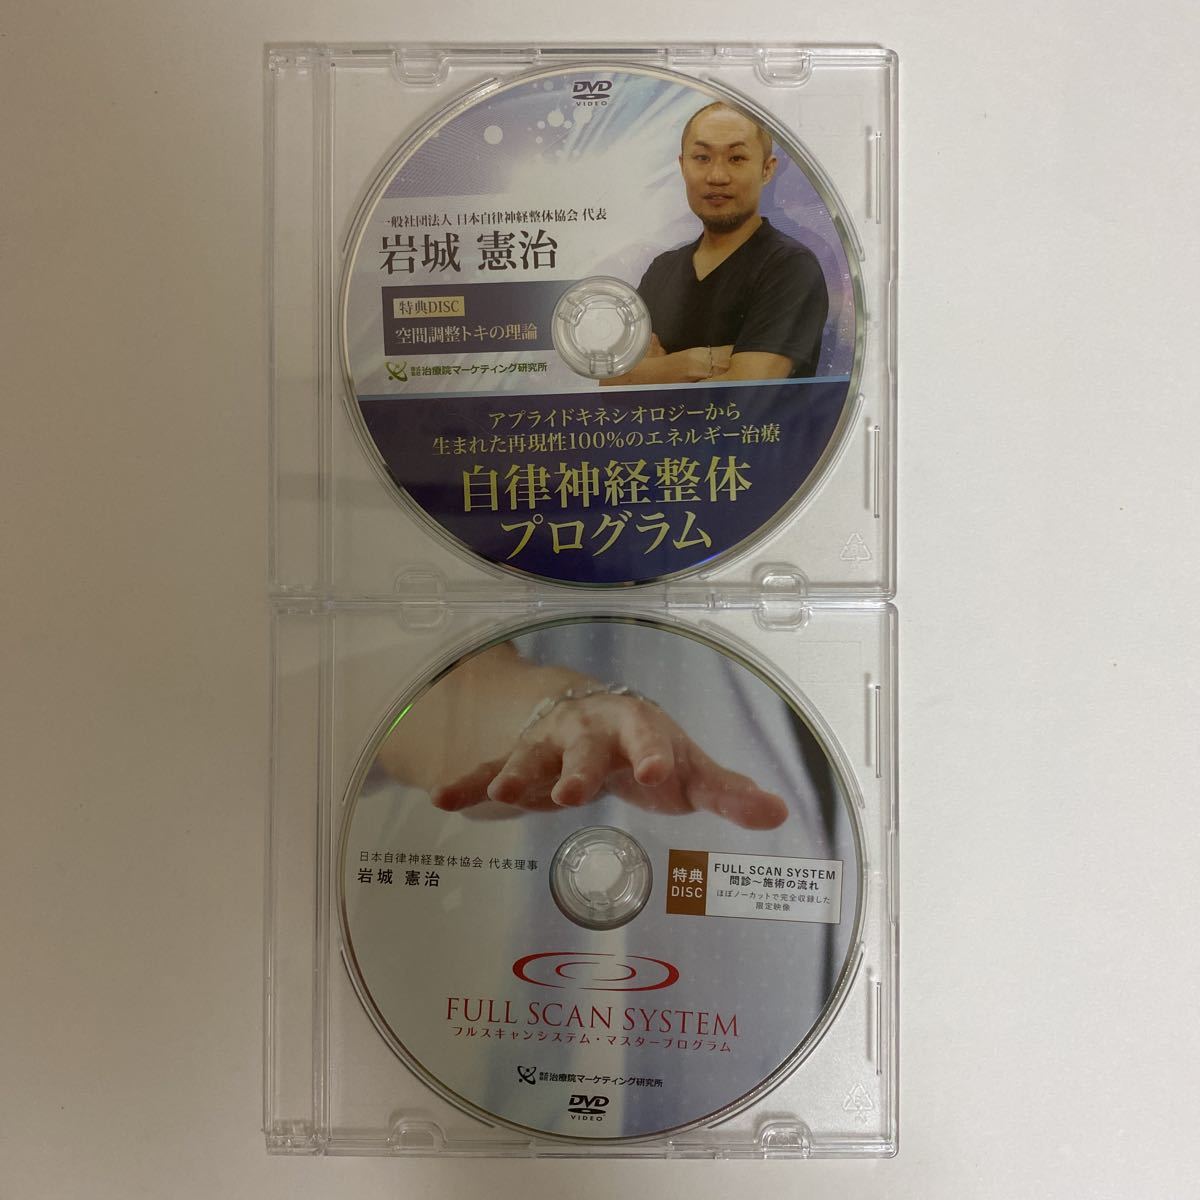 整体DVD10枚セット【最新自律神経整体プログラム】【フルスキャン